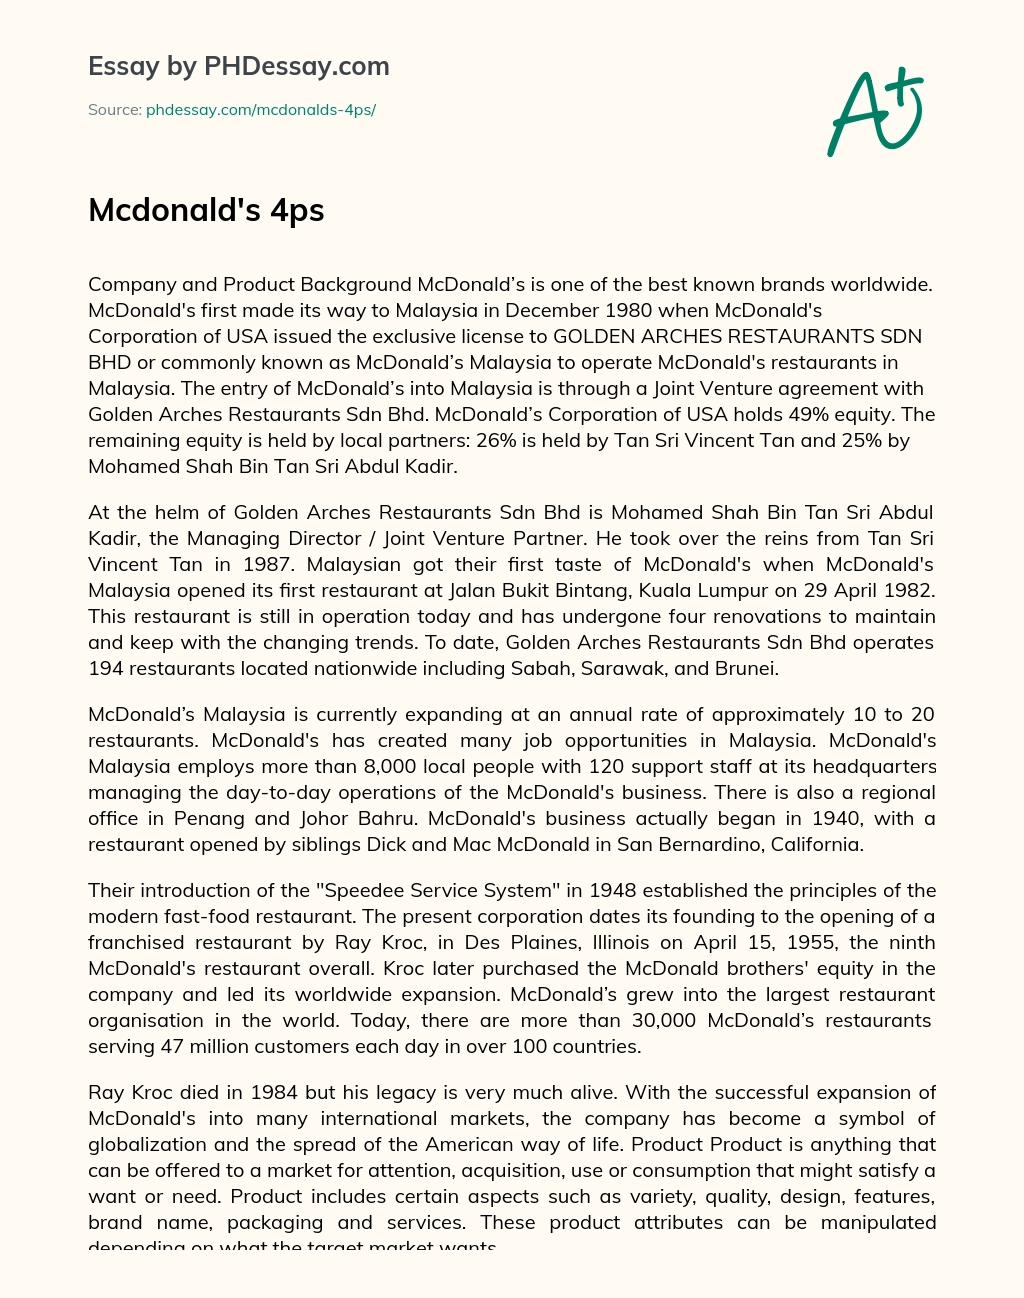 Mcdonald’s 4ps essay